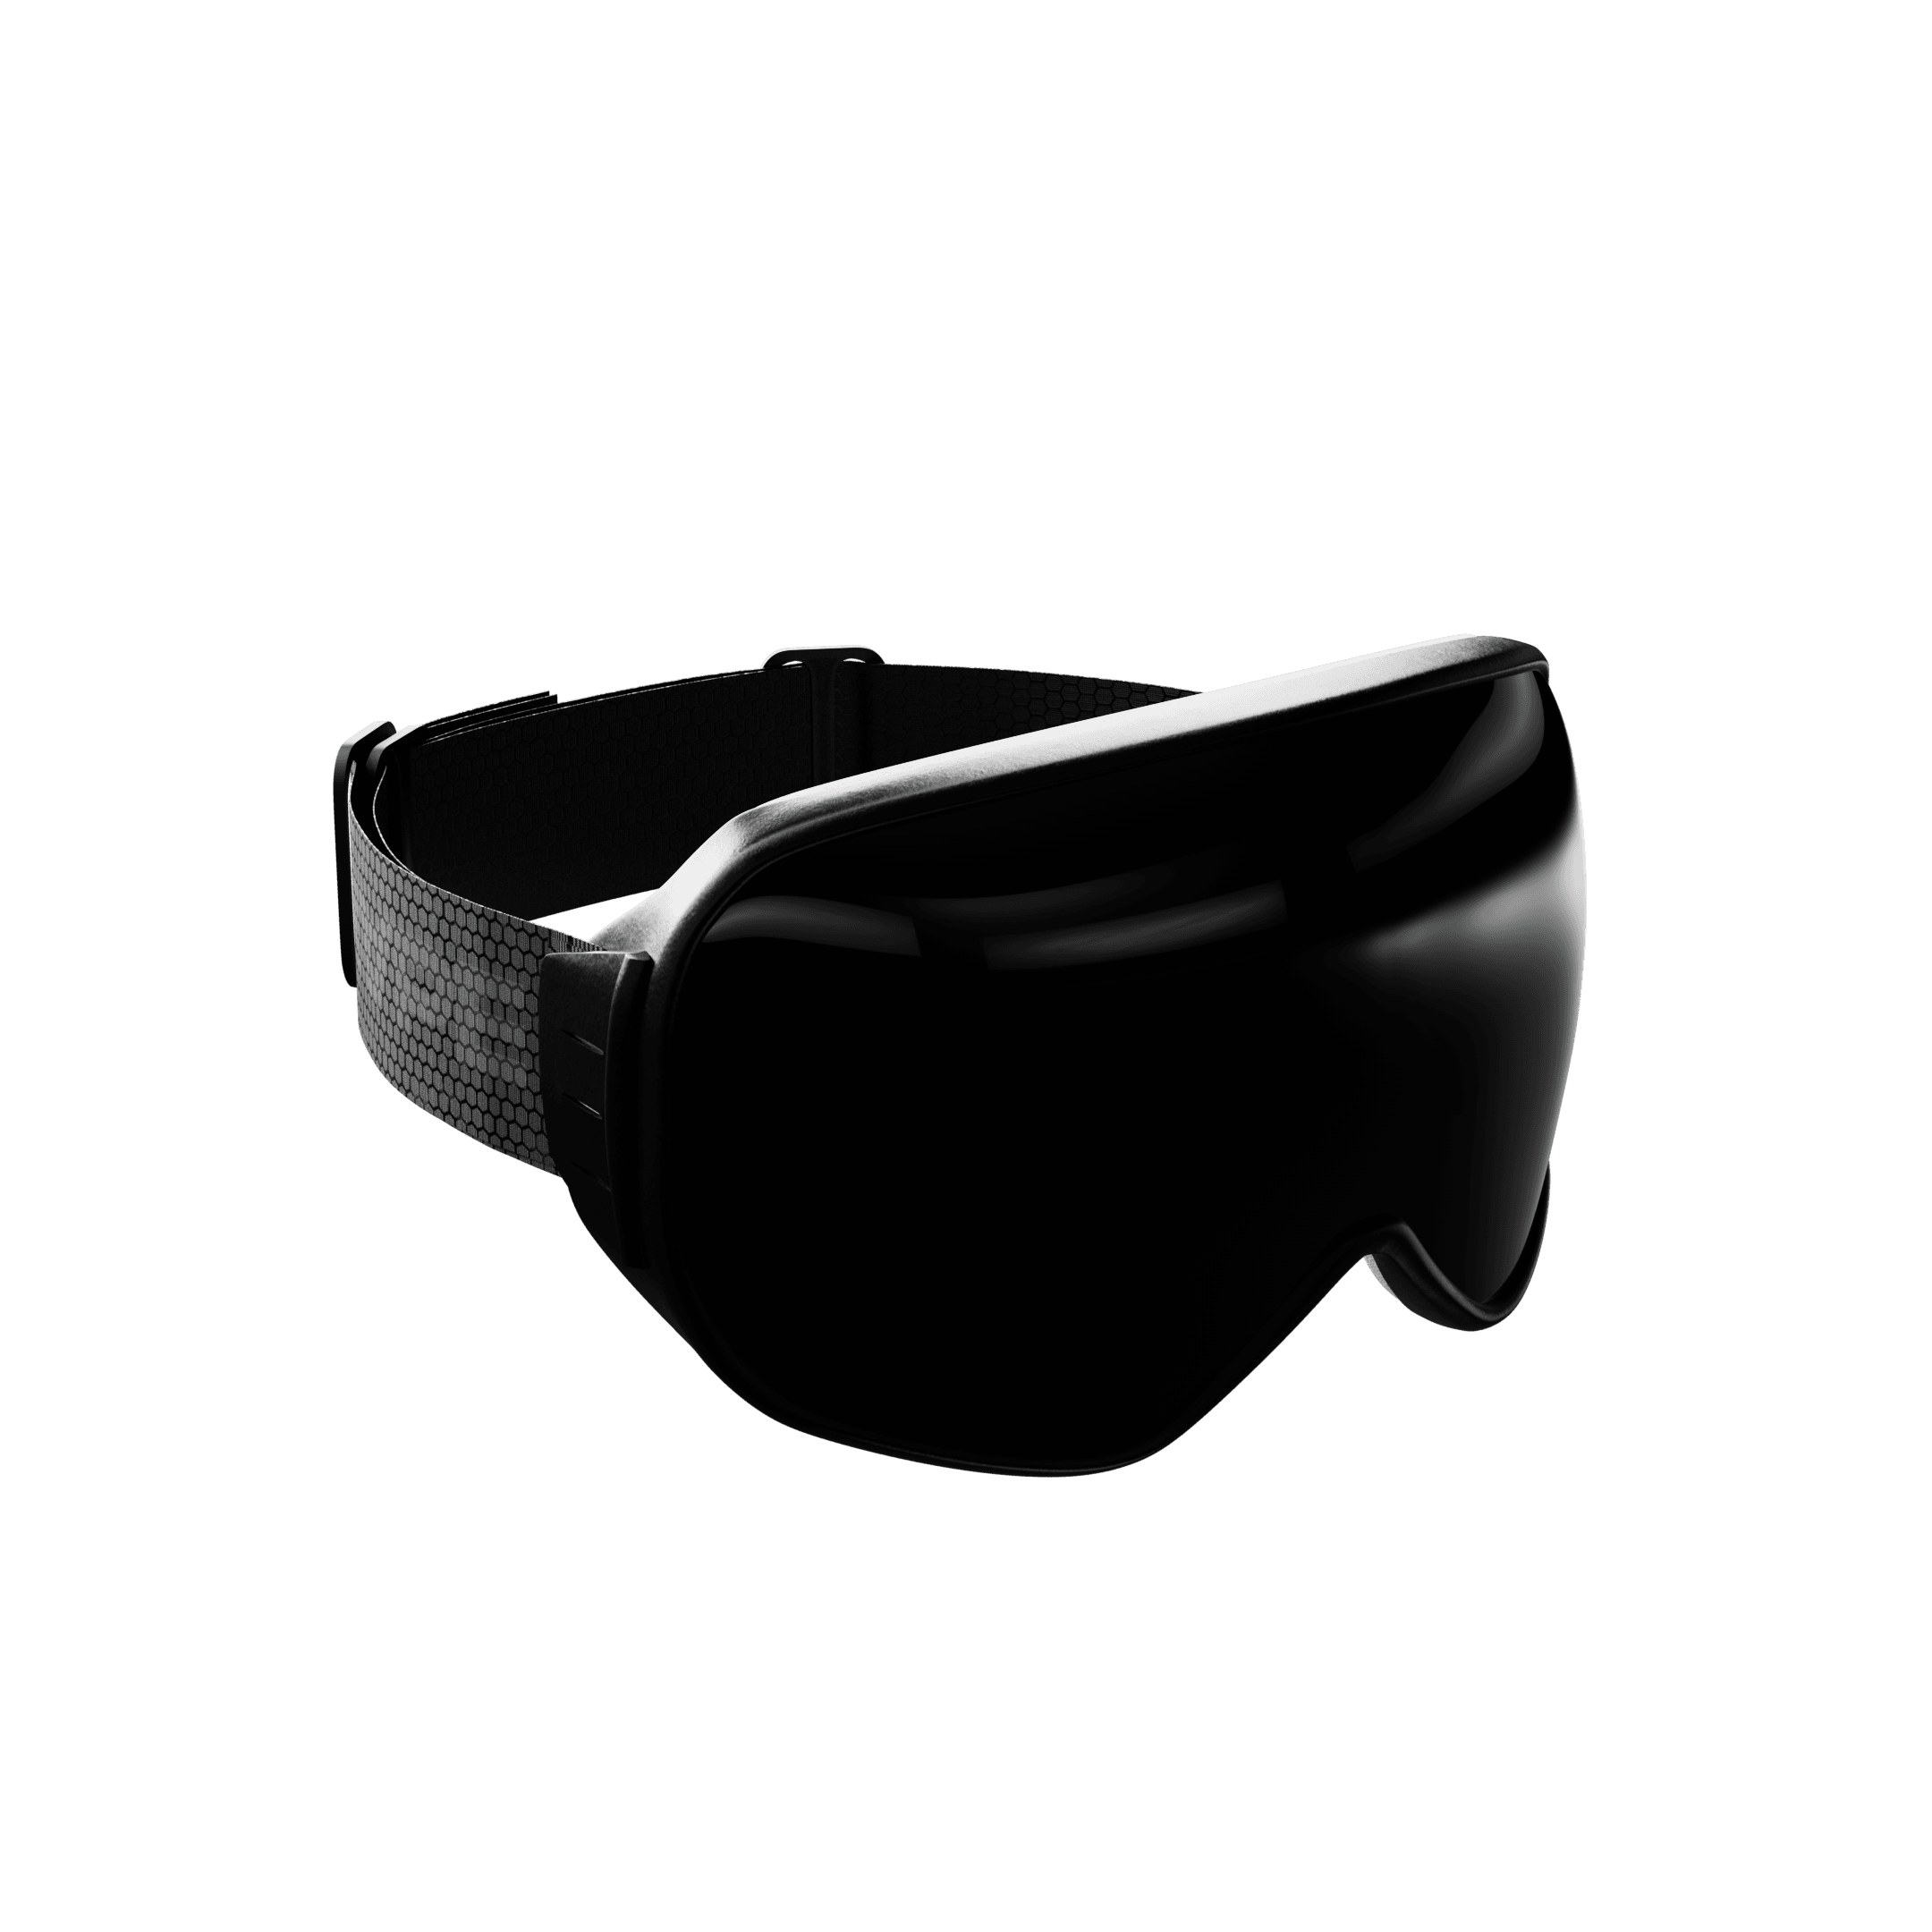 Ski Goggles (Black on Black)